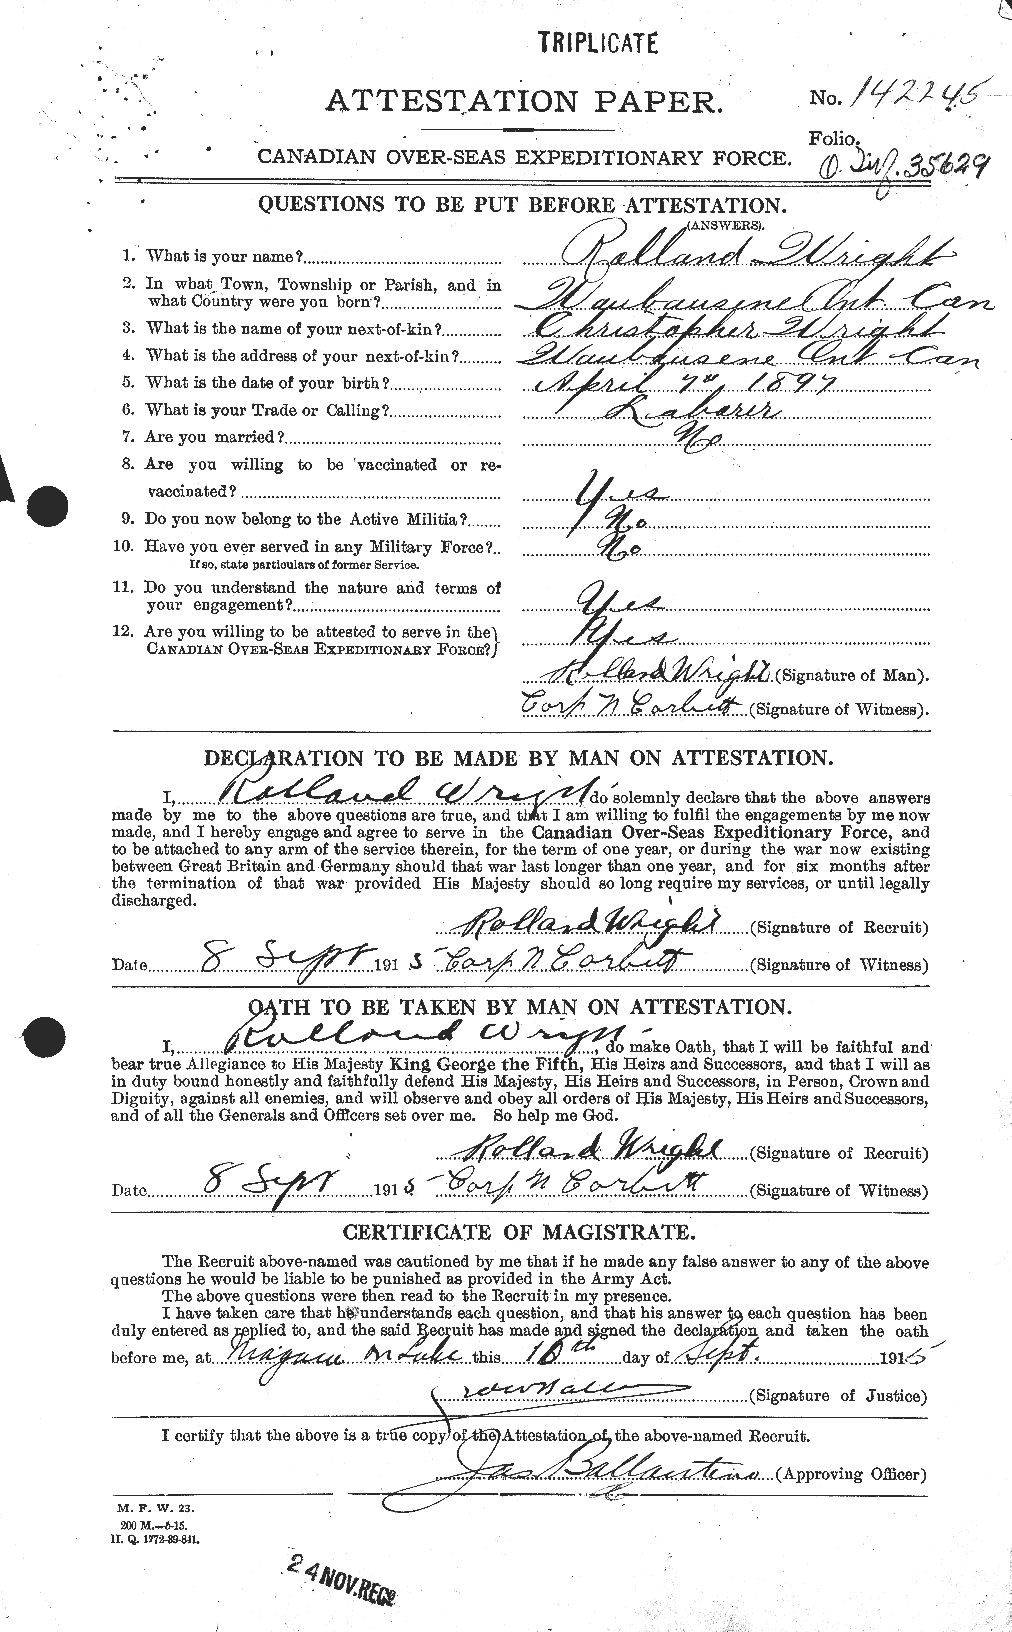 Dossiers du Personnel de la Première Guerre mondiale - CEC 688525a